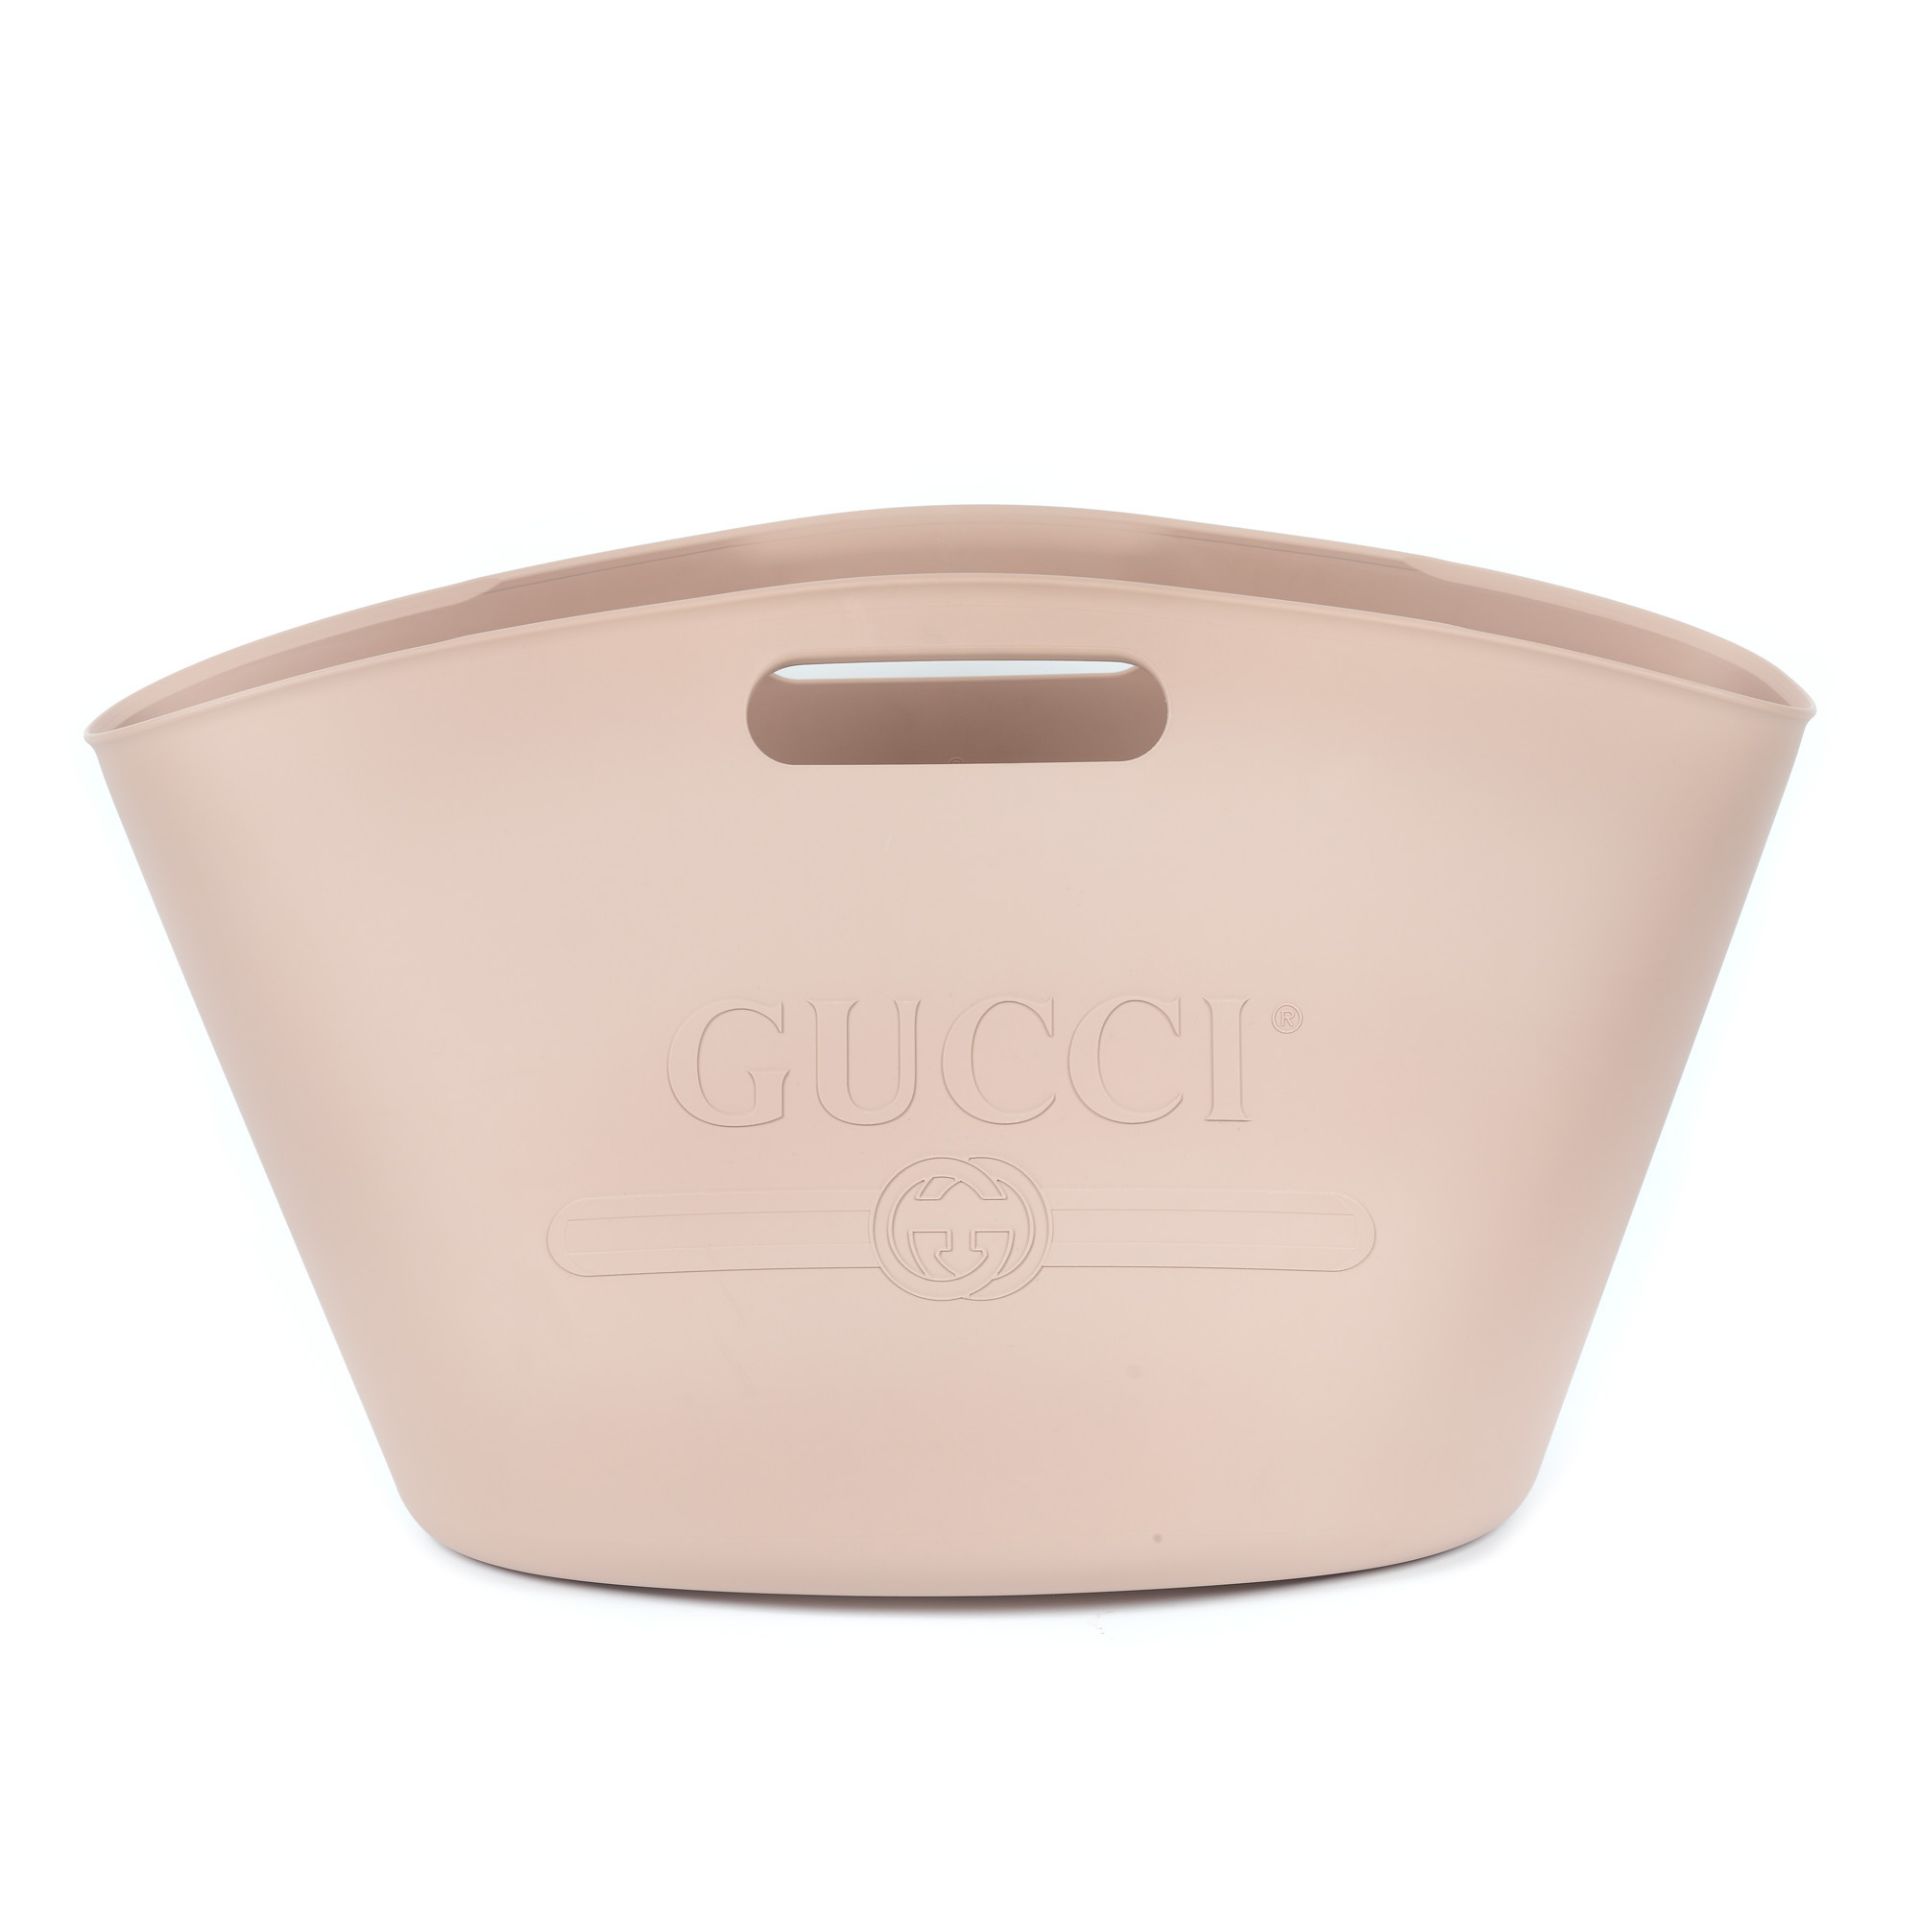 Gucci bag, rubber, millennial pink